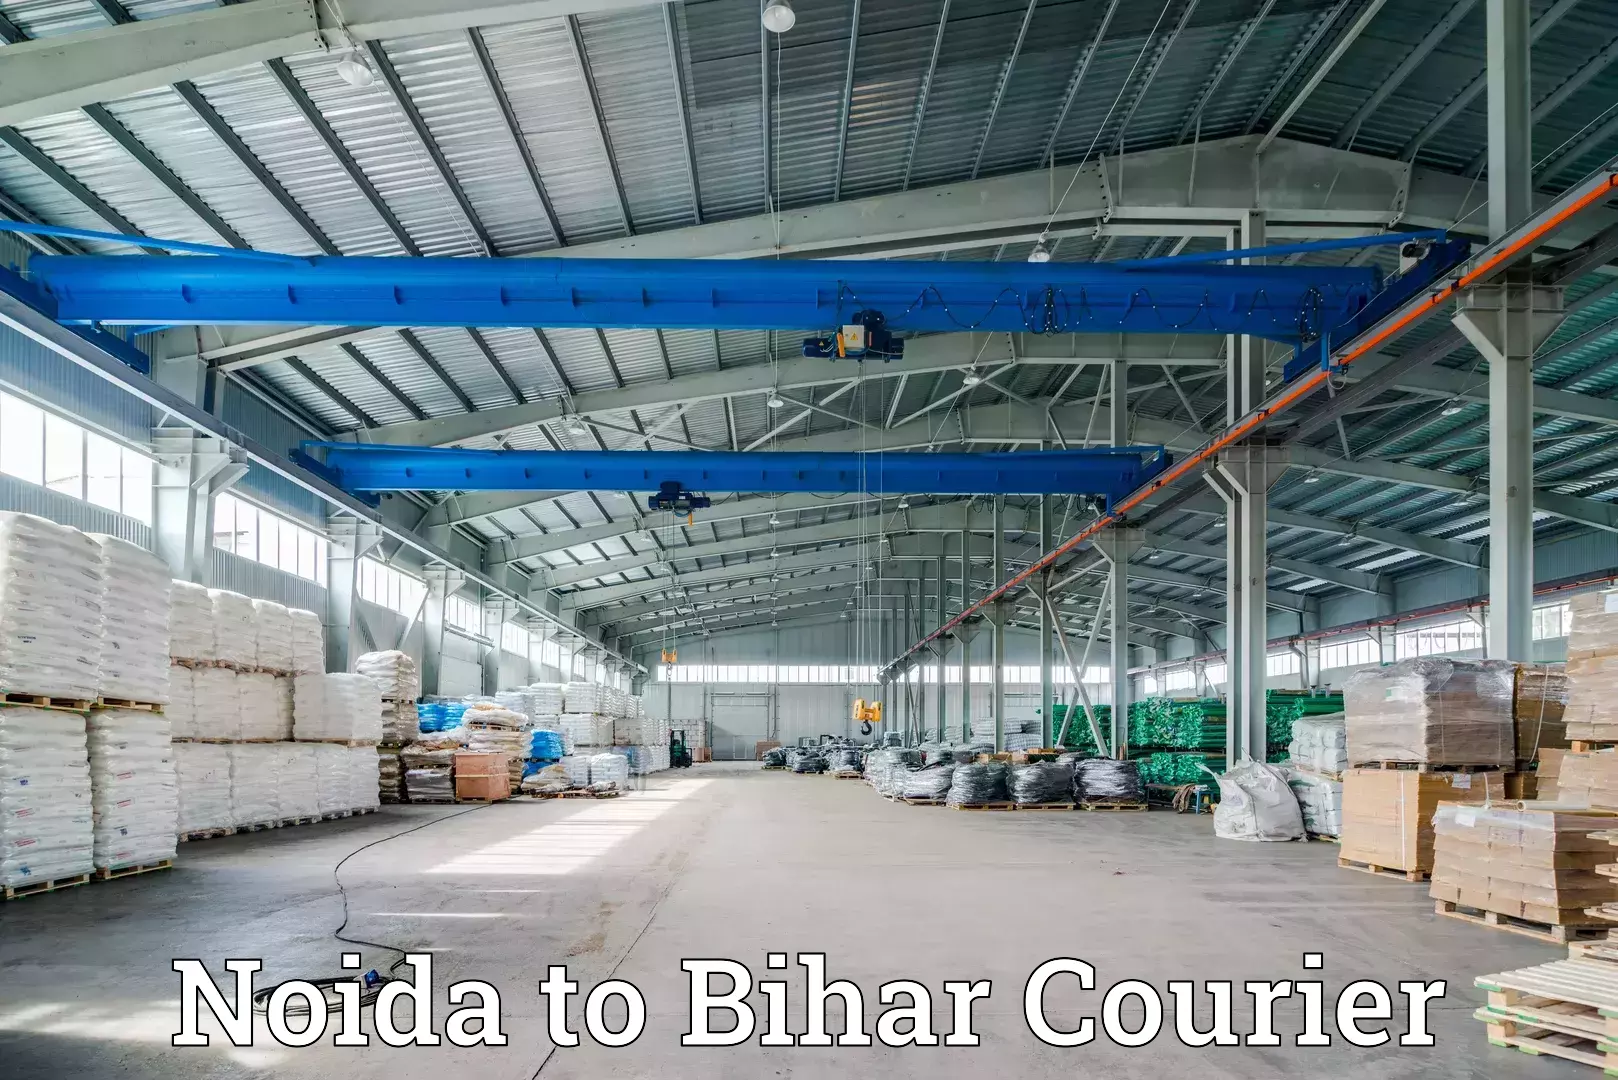 Doorstep delivery service Noida to Bihar